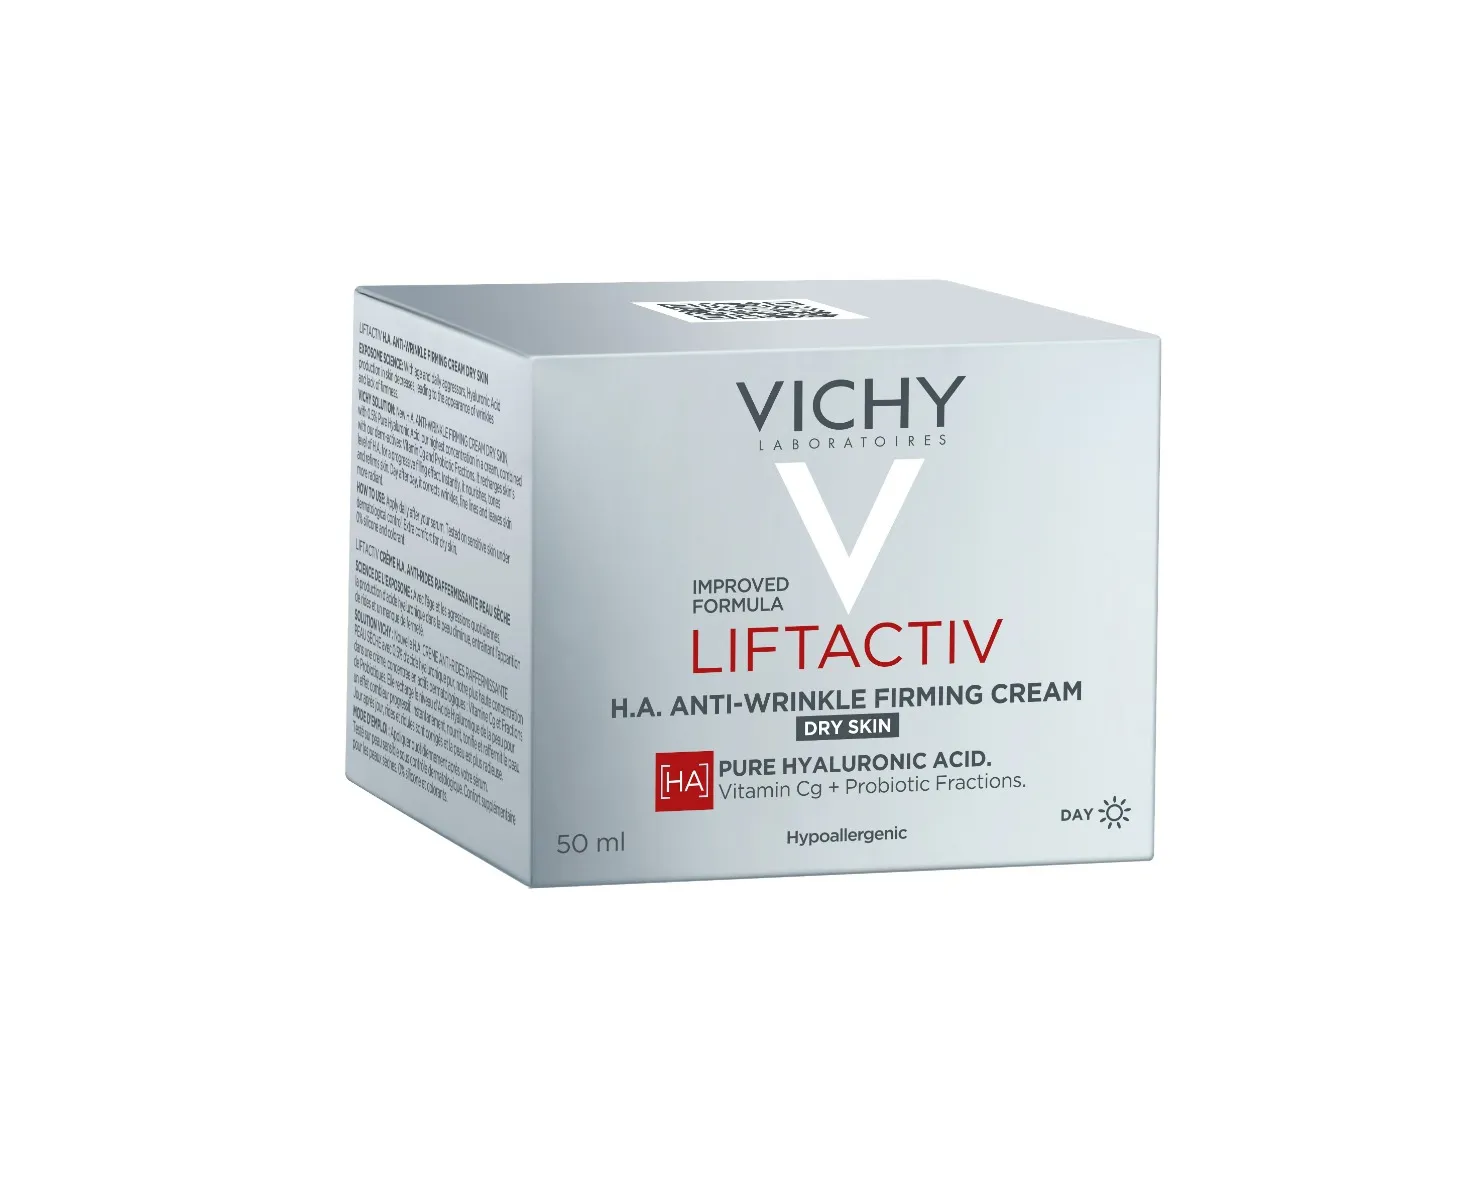 Vichy Liftactiv H.A. spevňujúci krém proti vraskám pre suchú pleť 1×50 ml, krém